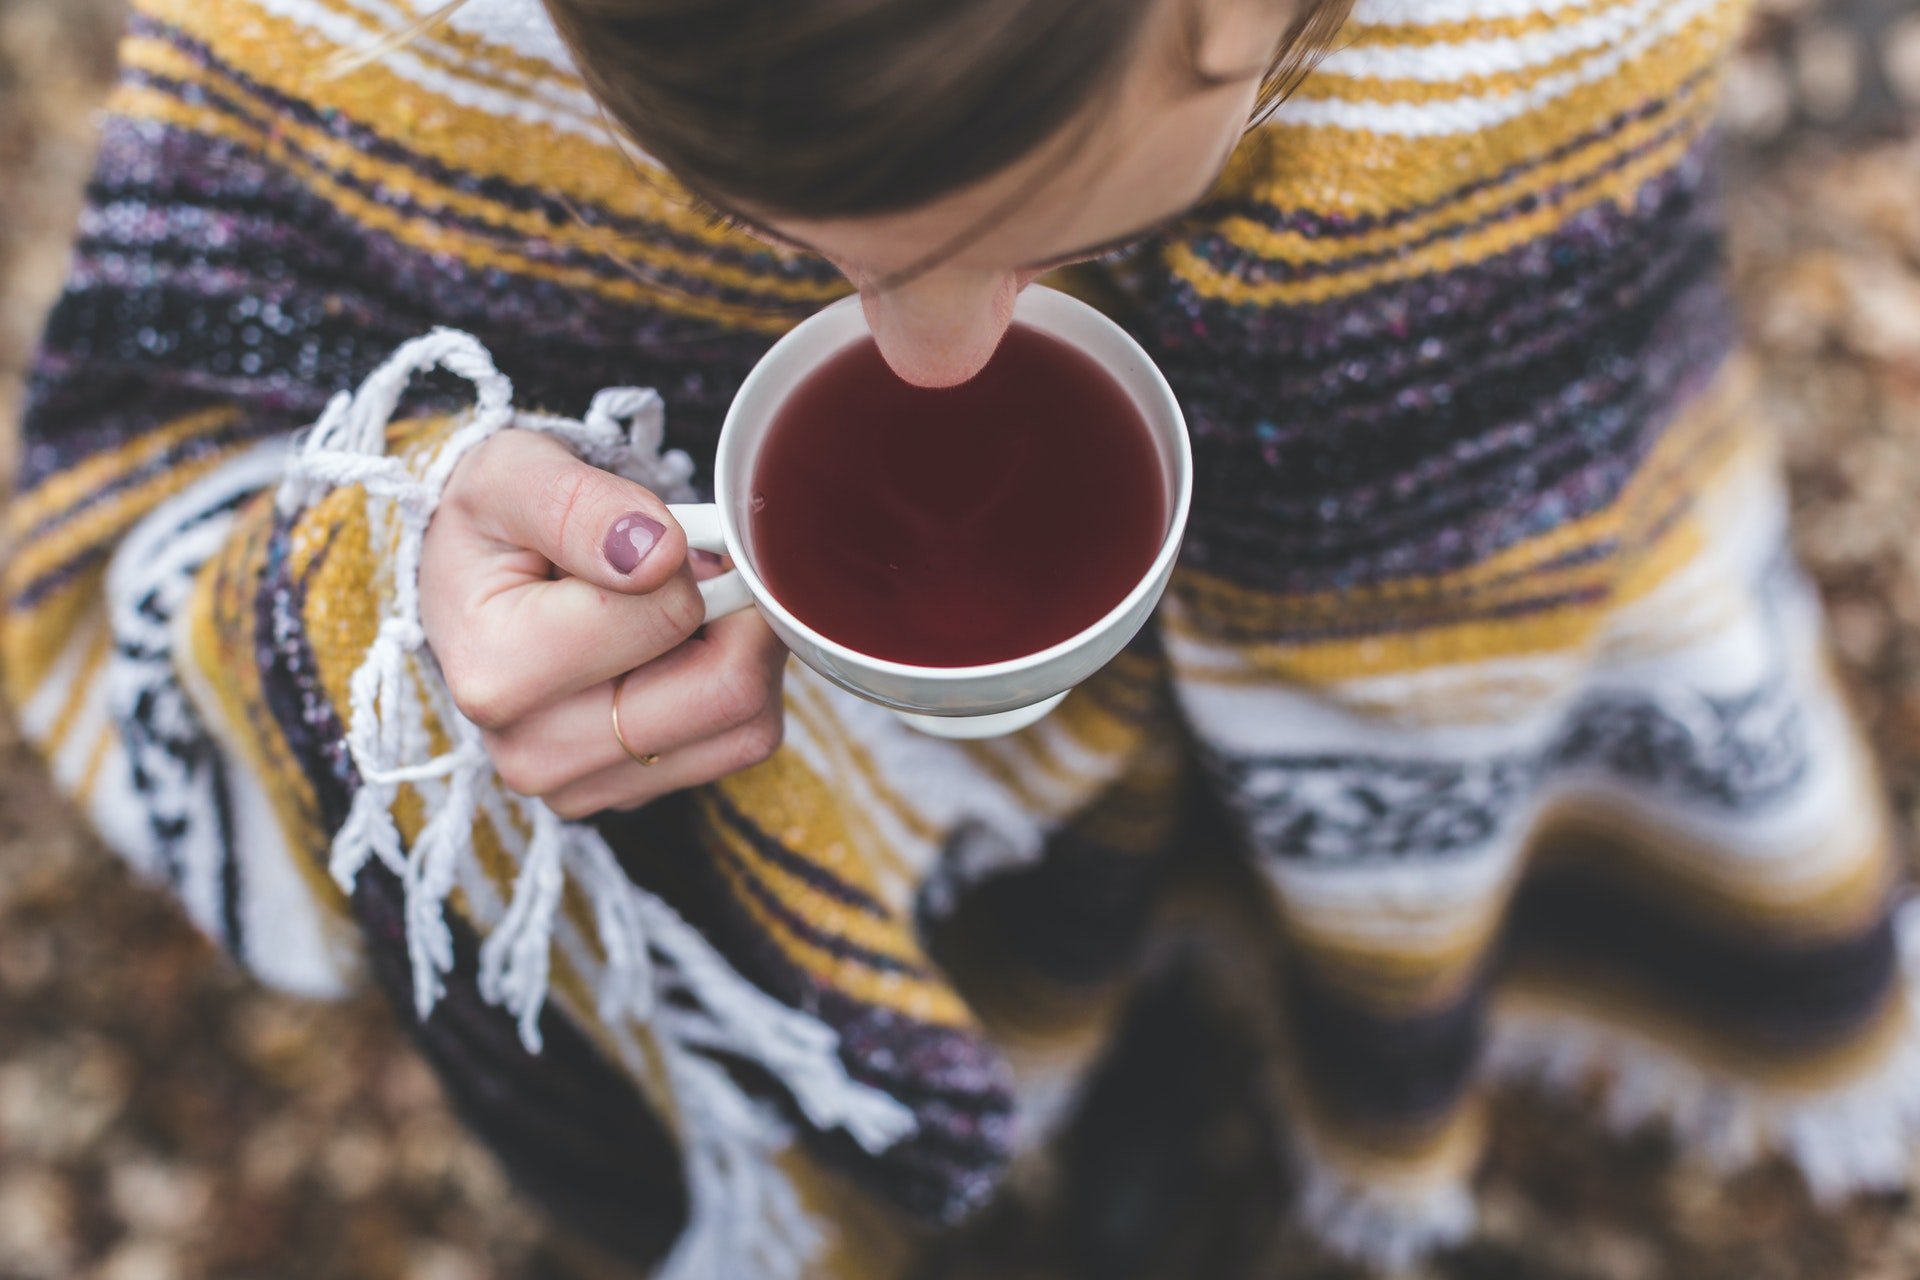 دراسة تكشف فوائد وآثار جانبية لشرب الشاي الأسود